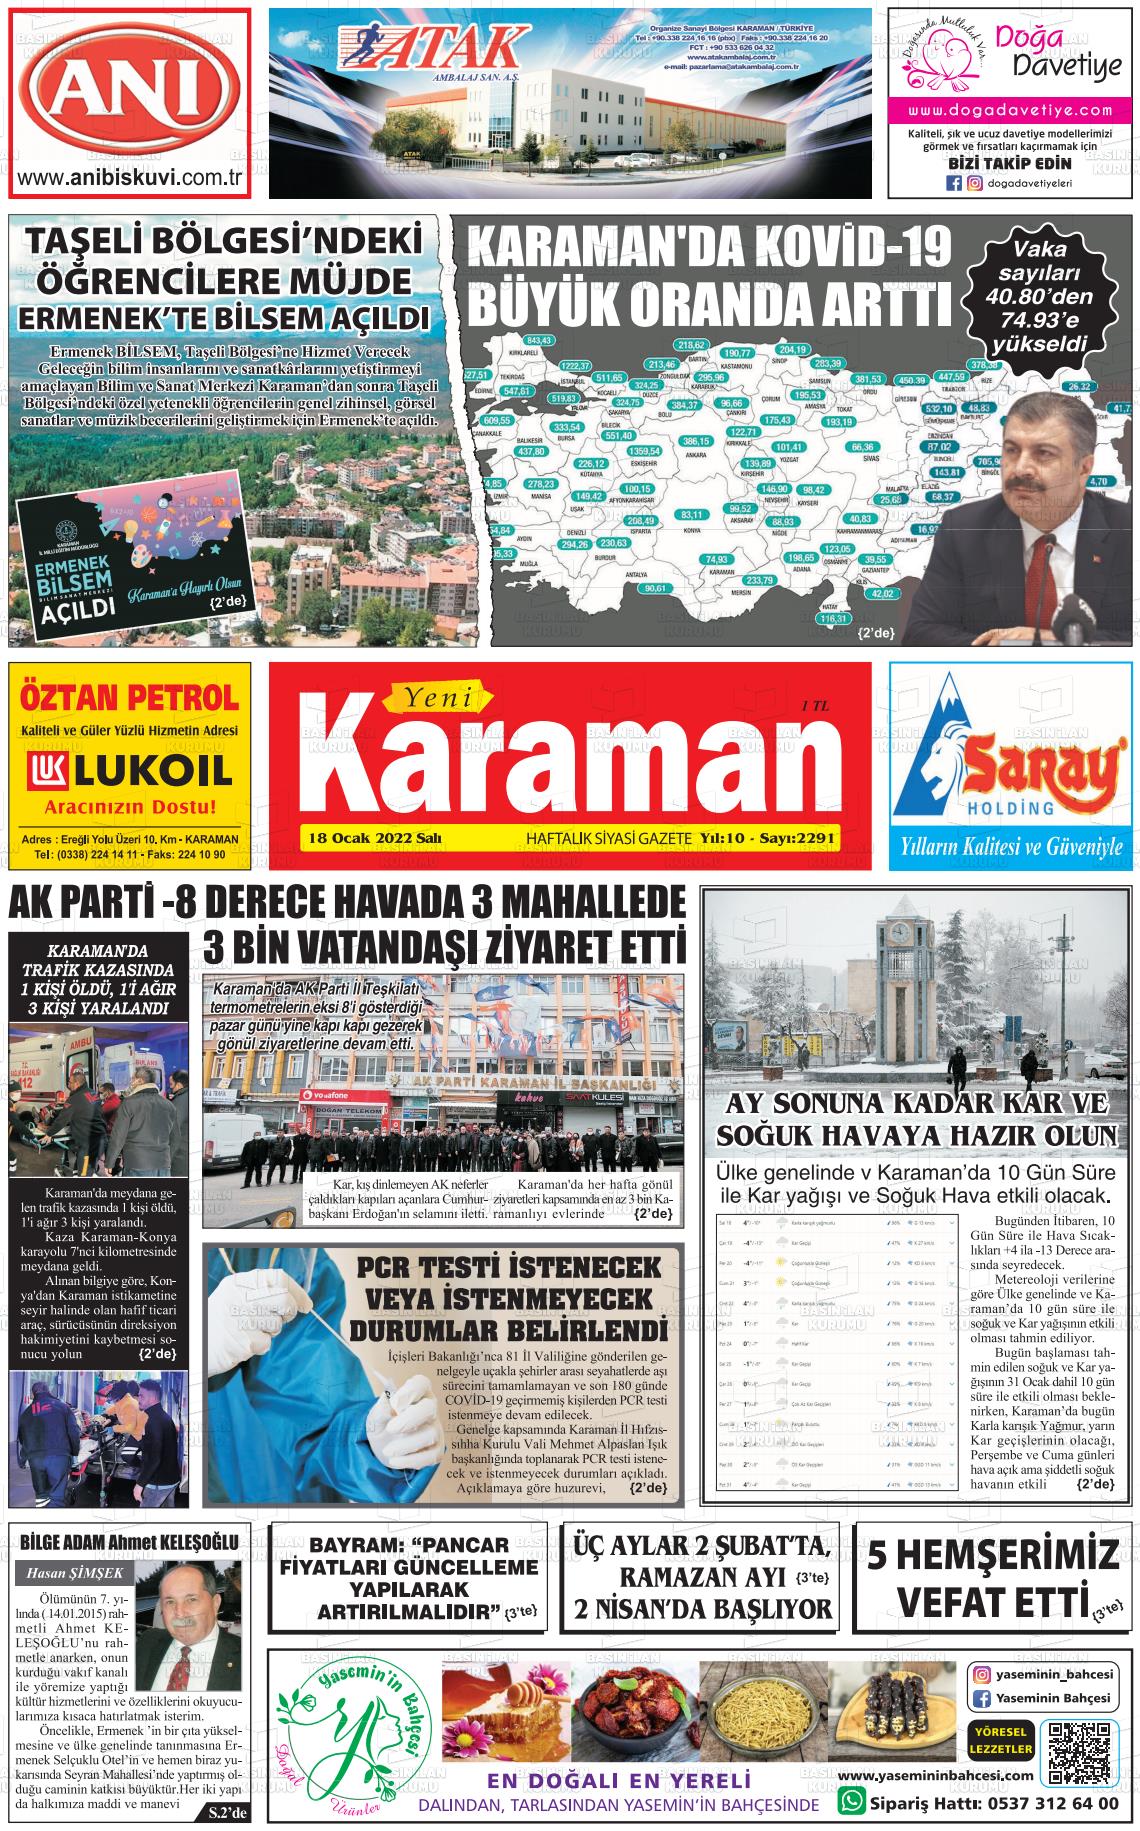 18 Ocak 2022 Yeni Karaman Gazete Manşeti